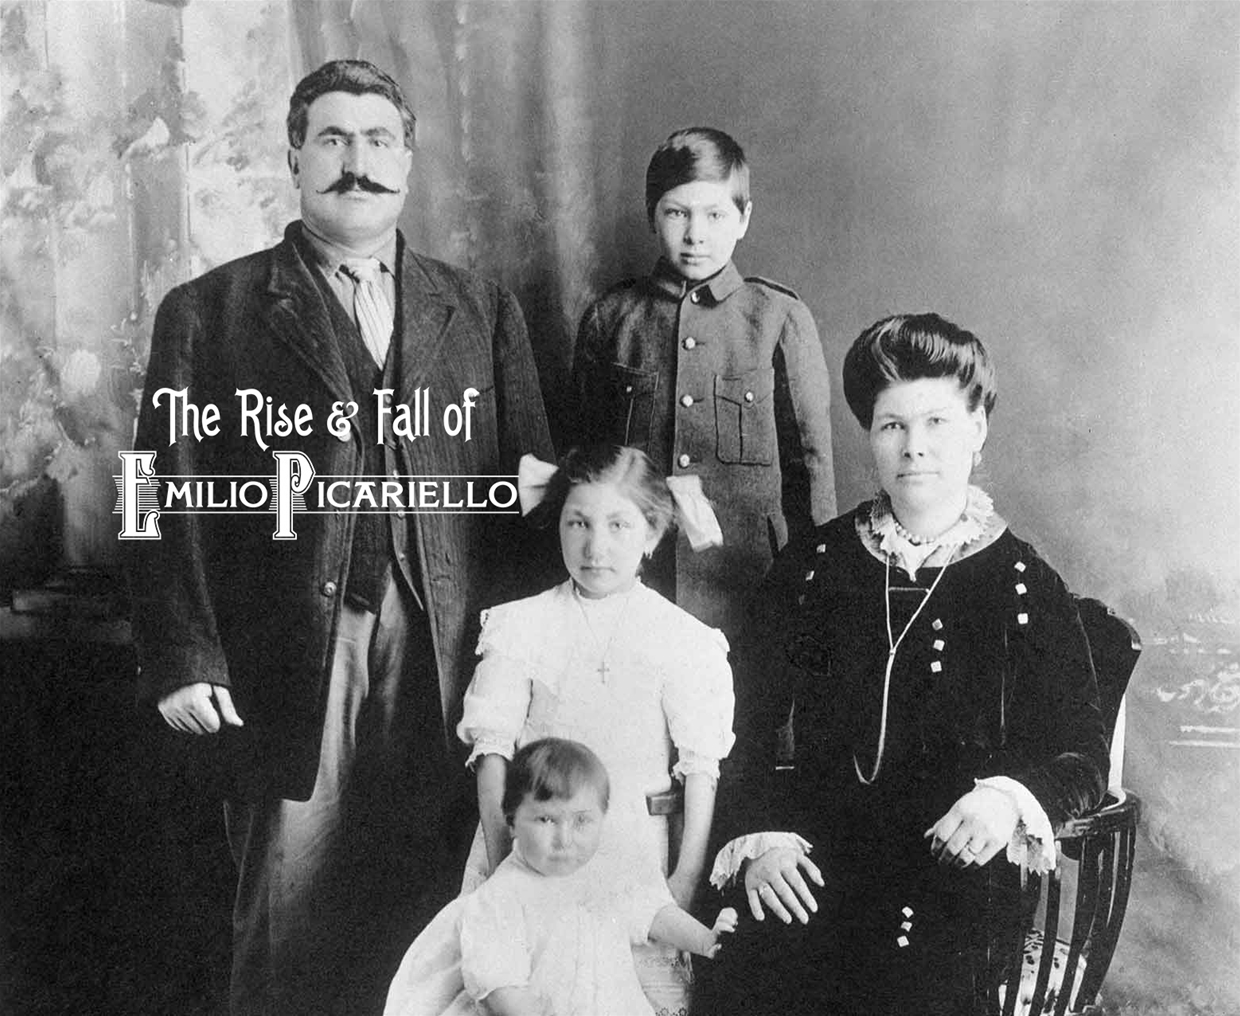 Emilio Picariello with his family